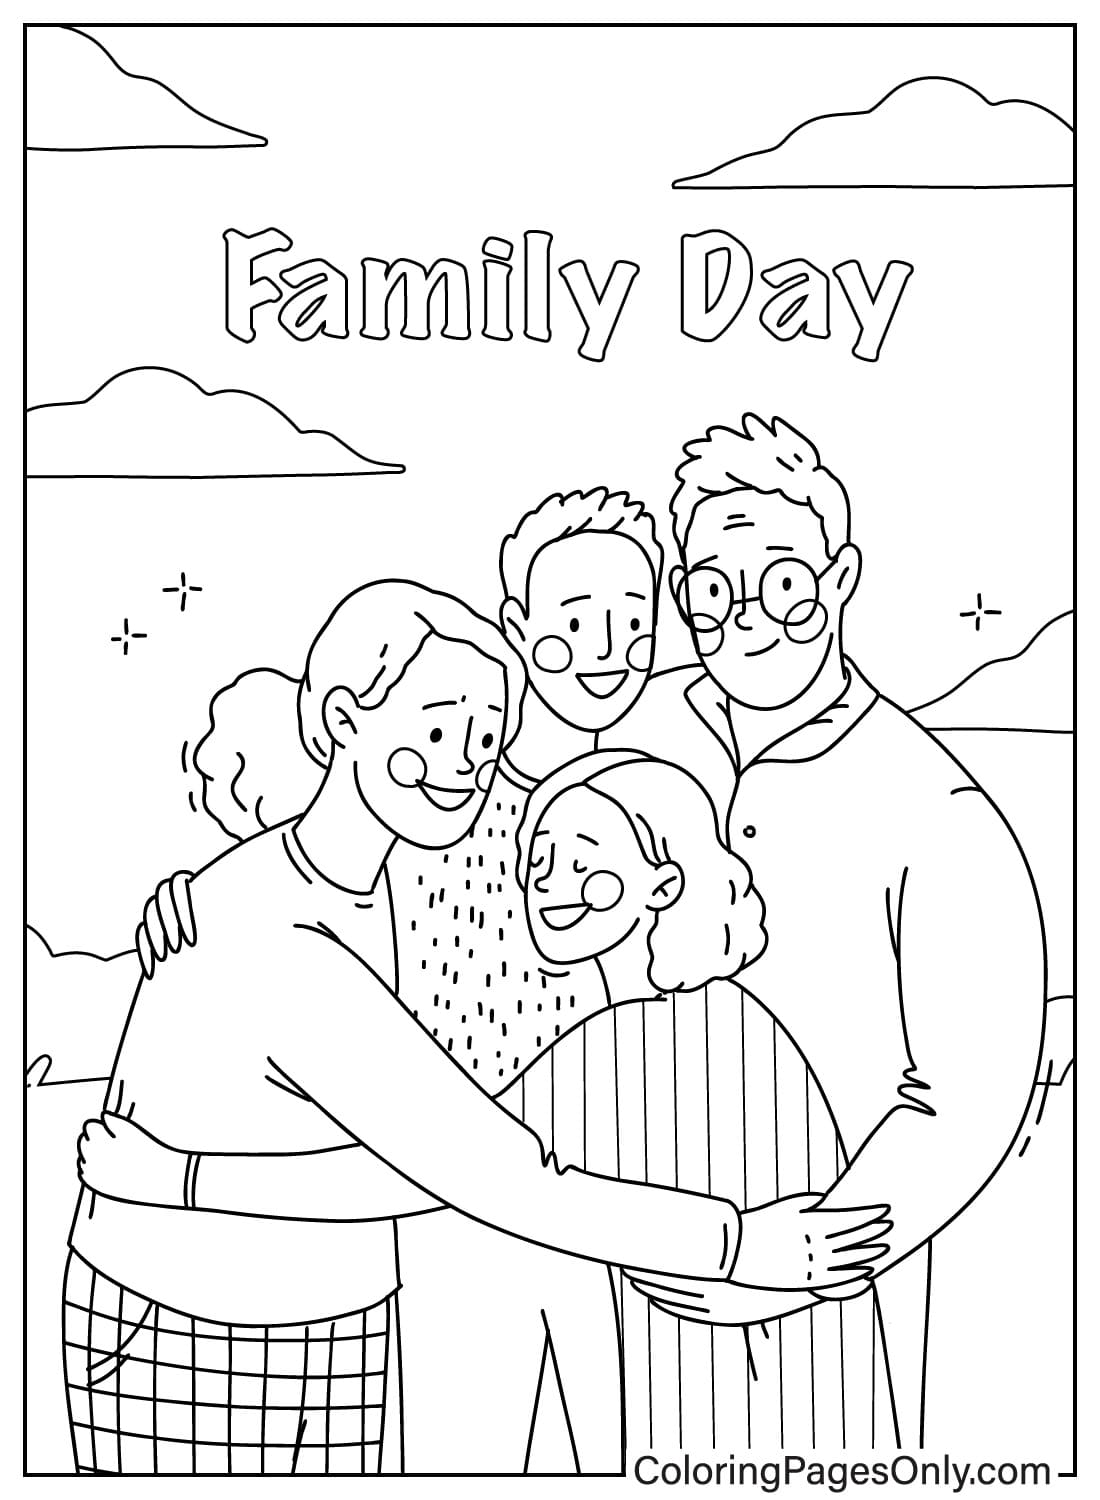 Раскраски ко Дню семьи из мультфильма «День семьи»